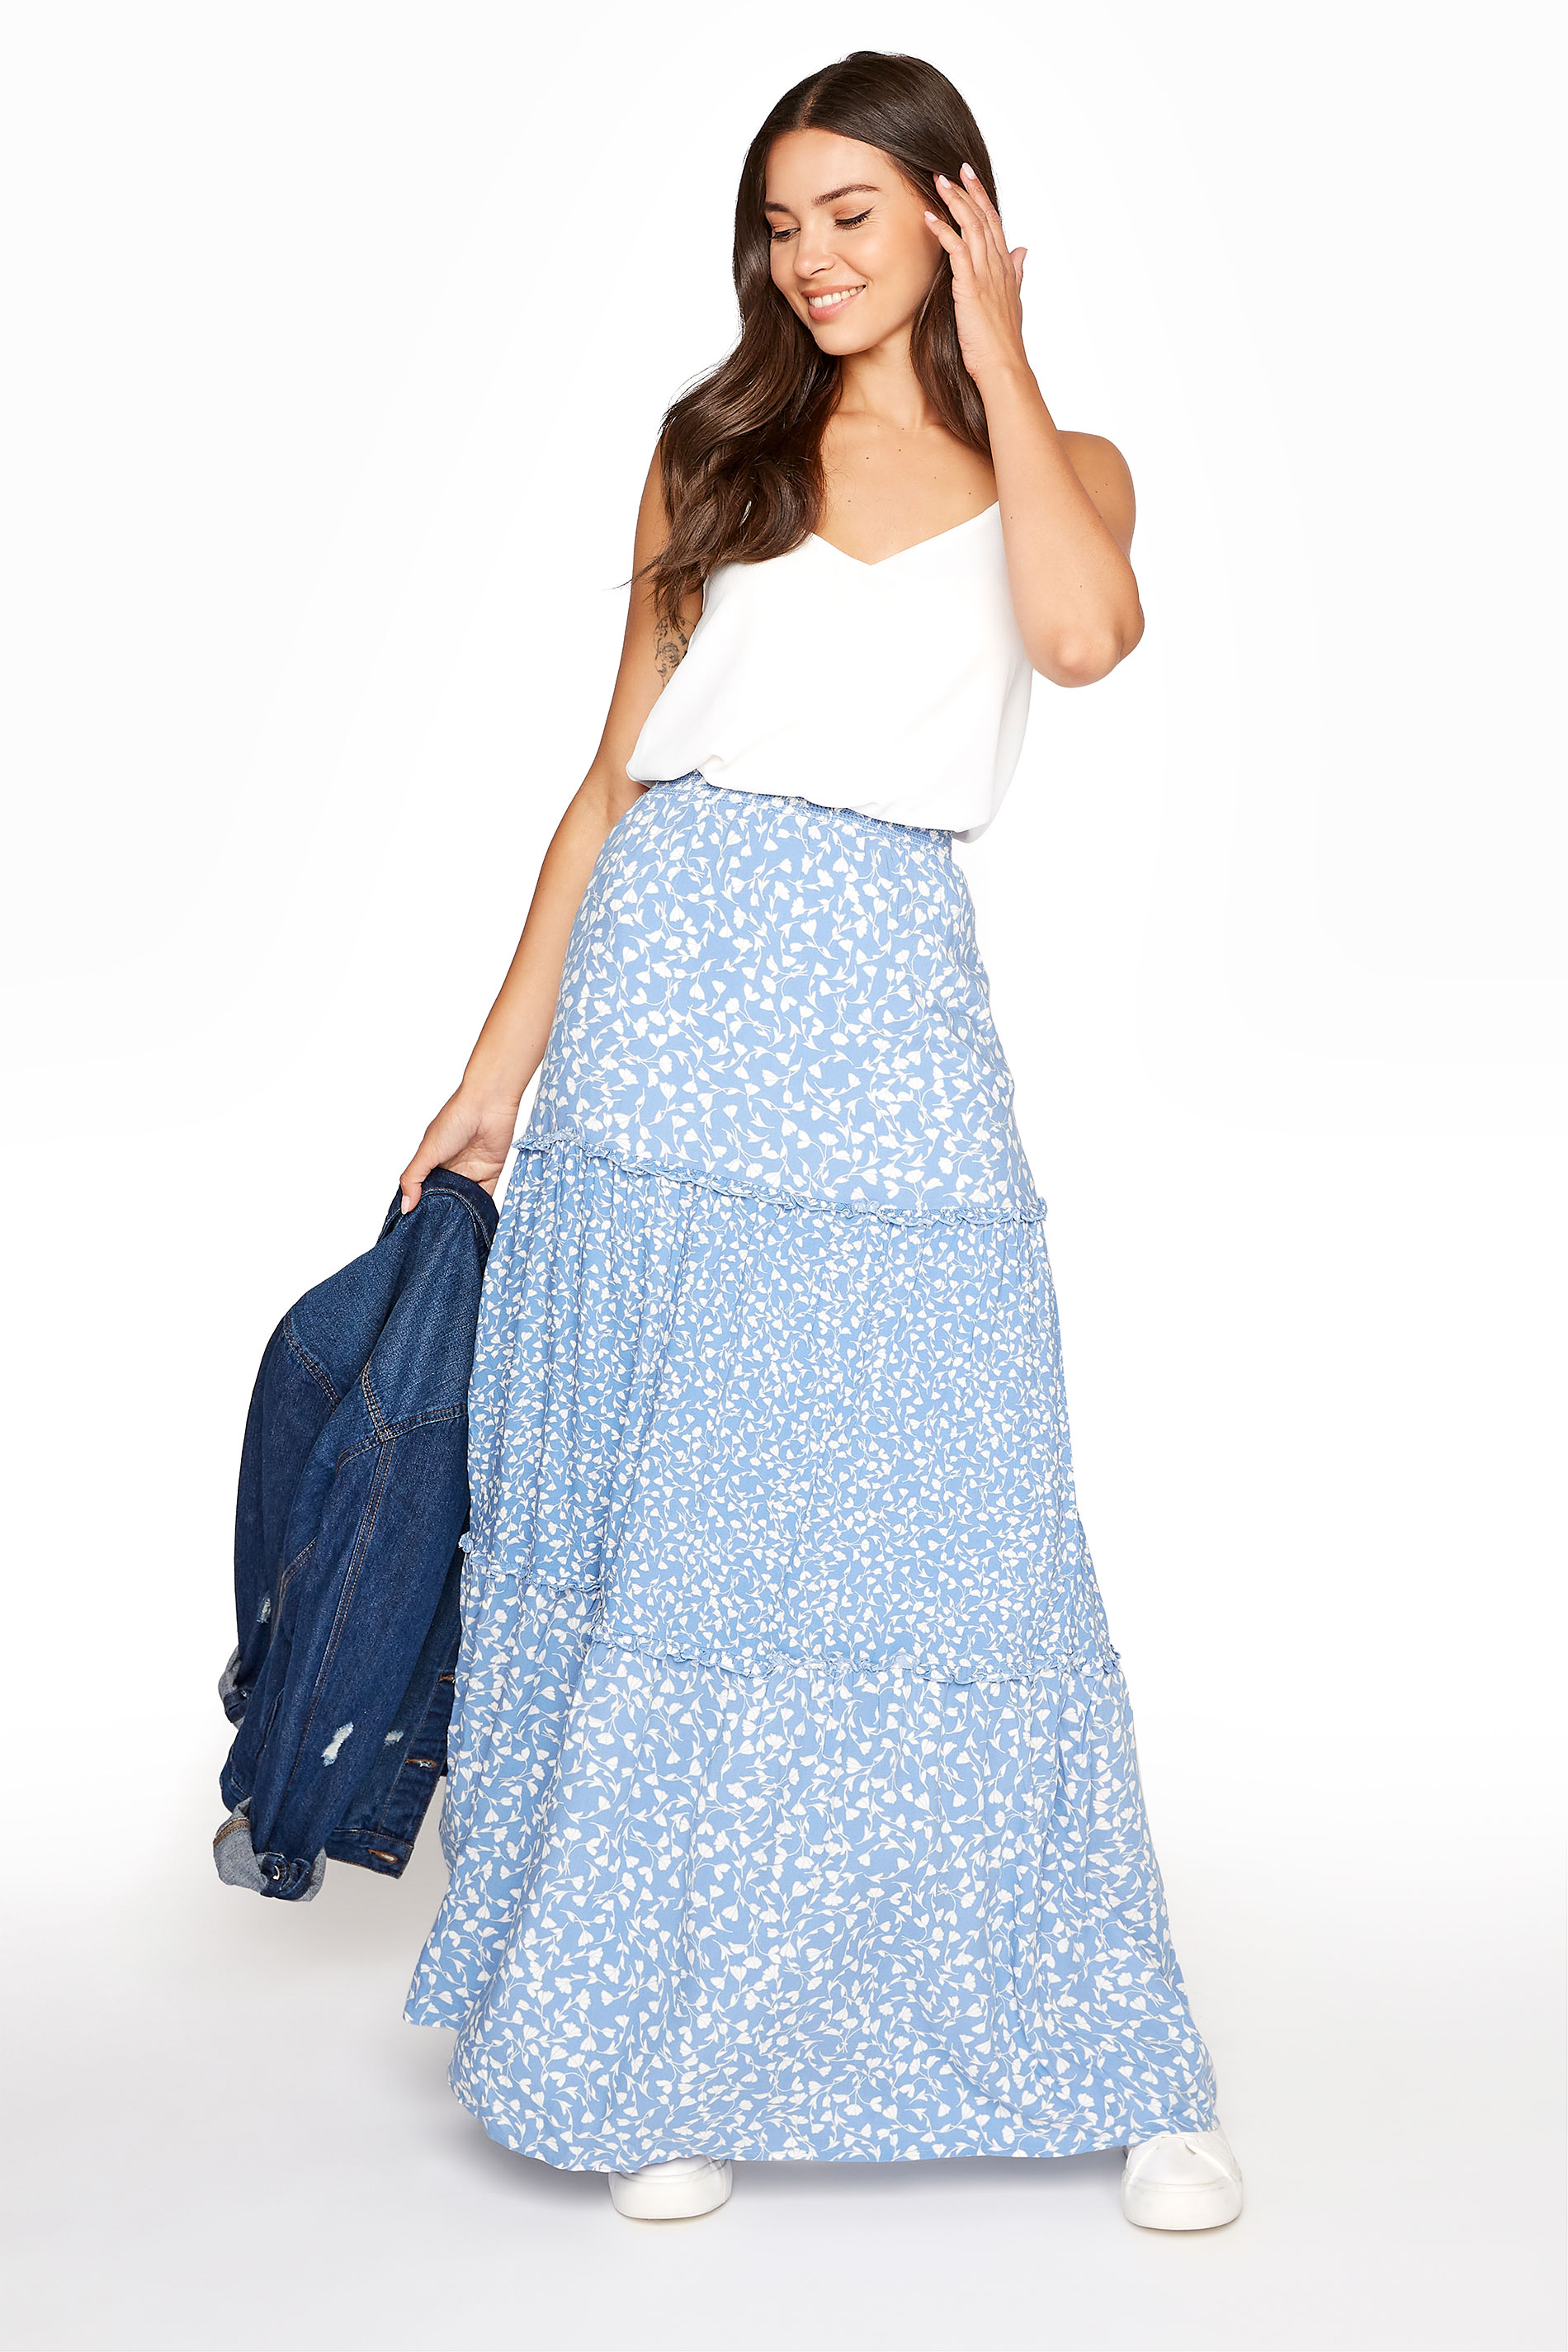 Long Tall Sally Women's Light Blue Floral Print Tiered Woven Maxi Skirt